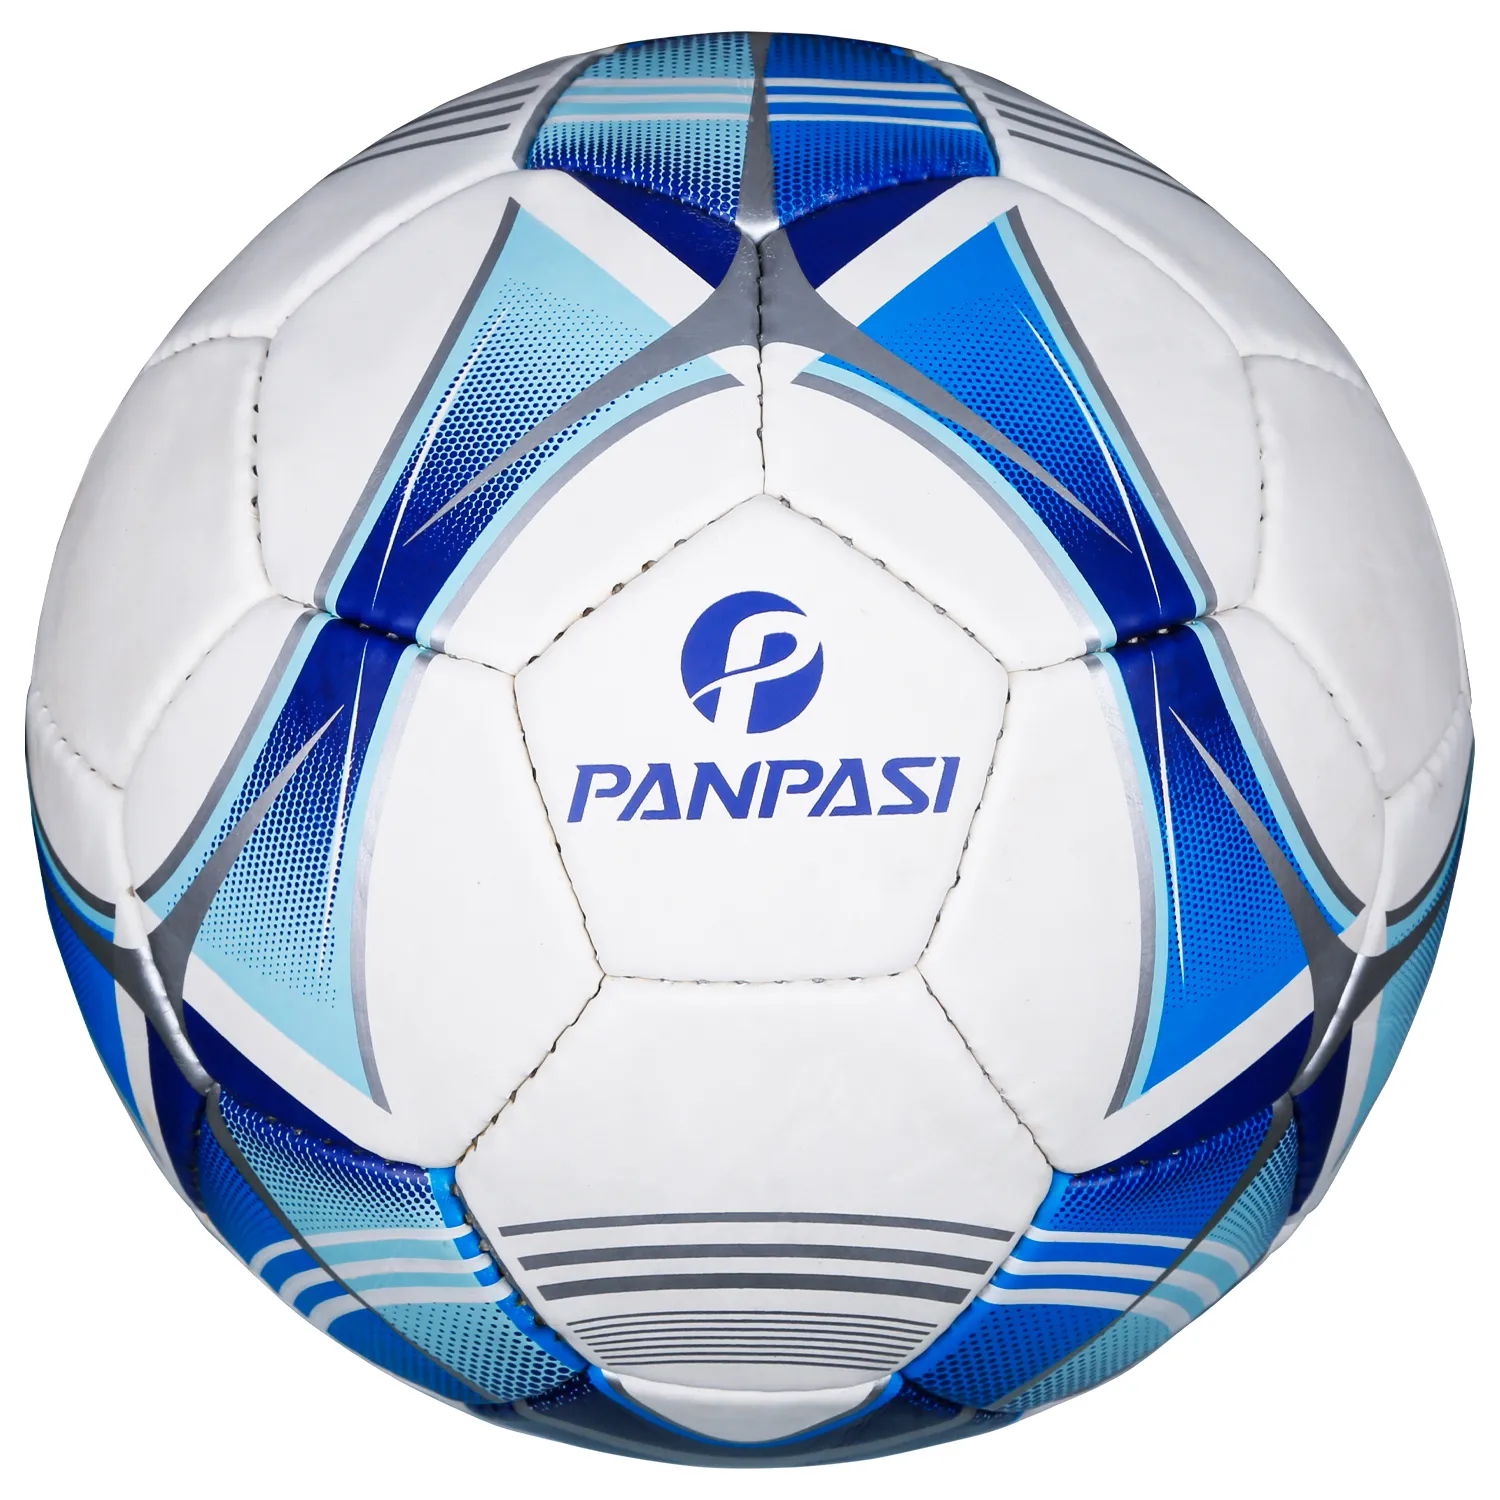 BANPASI SOCCER BALL SIZE 4 احترافية كرة مطاردة بولي جلدية يدوية مخيط للتدريب ، في الهواء الطلق ، داخلي ، نادي طويل الأمد كرة جذابة 6615